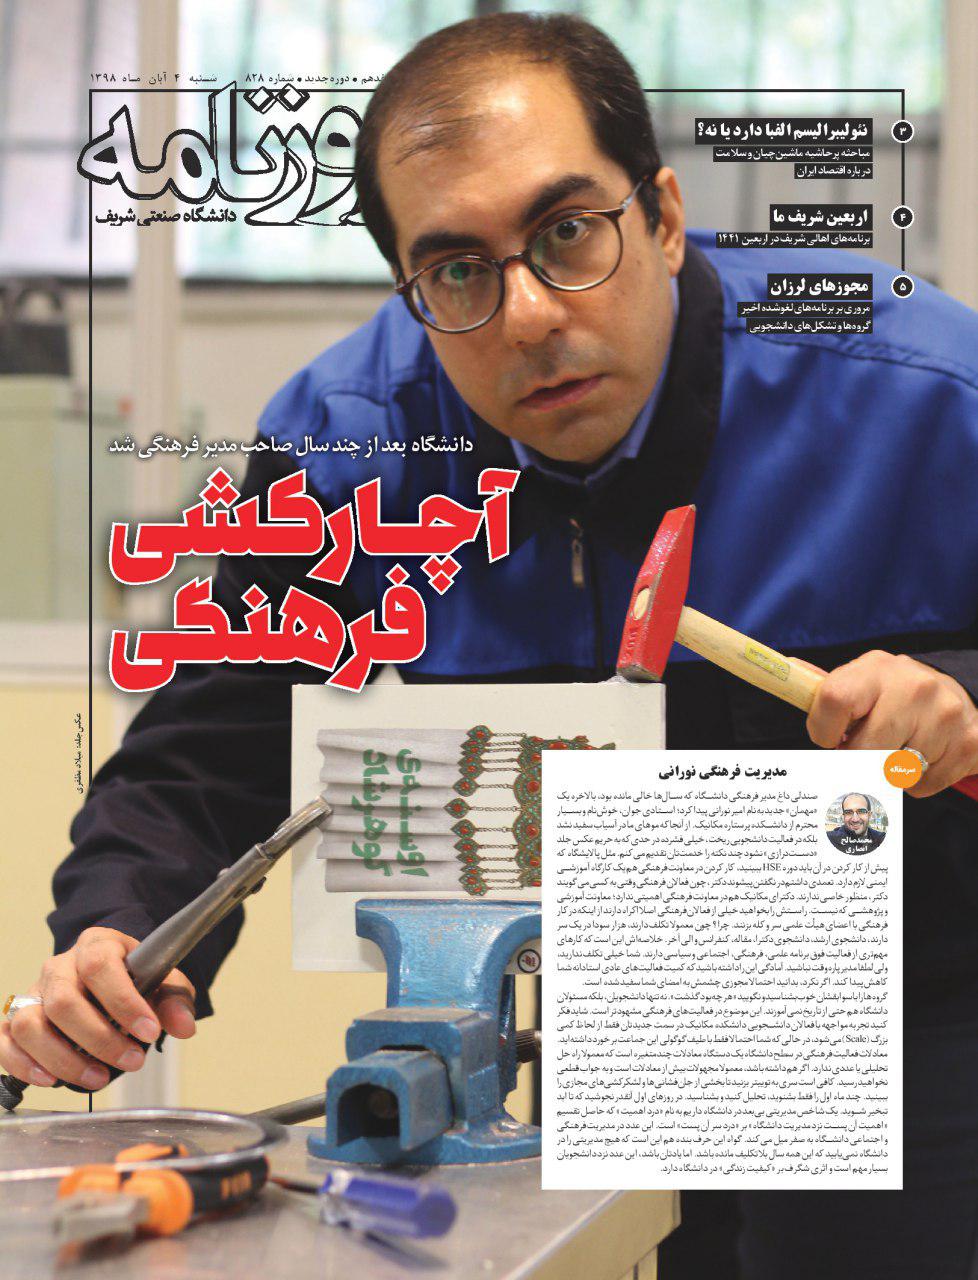 آچارکشی فرهنگی! / شماره ۸۲۸ نشریه دانشجویی «روزنامه شریف» منتشر شد